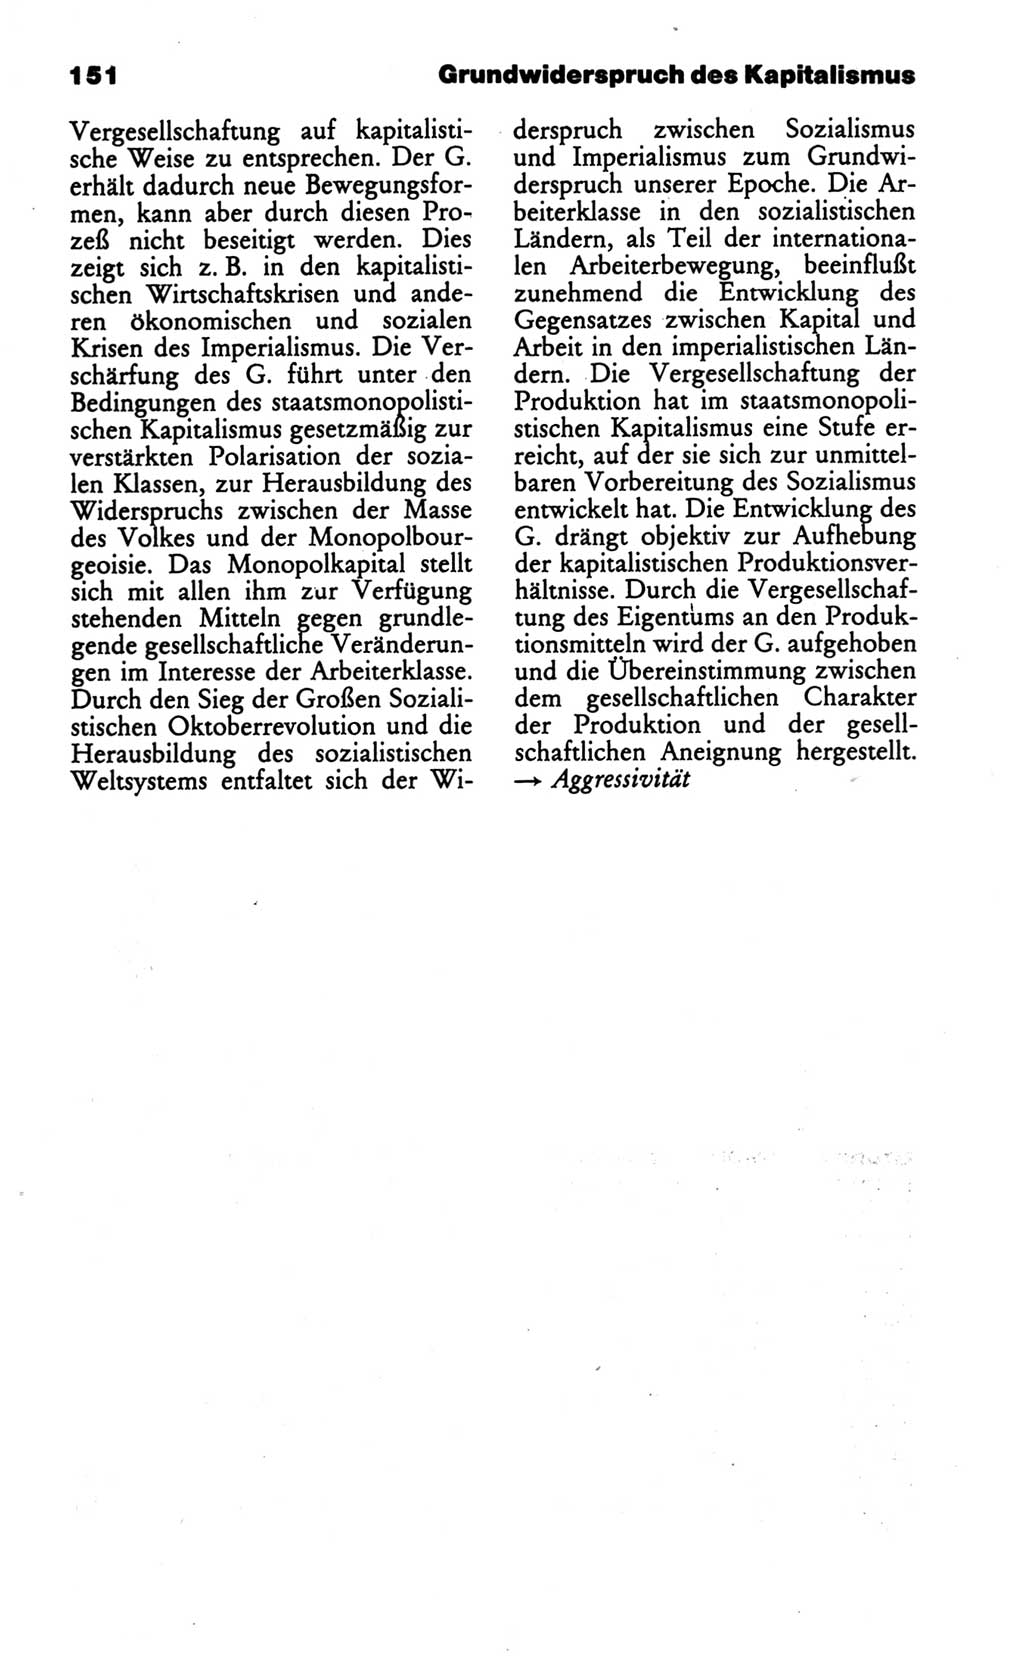 Wörterbuch des wissenschaftlichen Kommunismus [Deutsche Demokratische Republik (DDR)] 1986, Seite 151 (Wb. wiss. Komm. DDR 1986, S. 151)